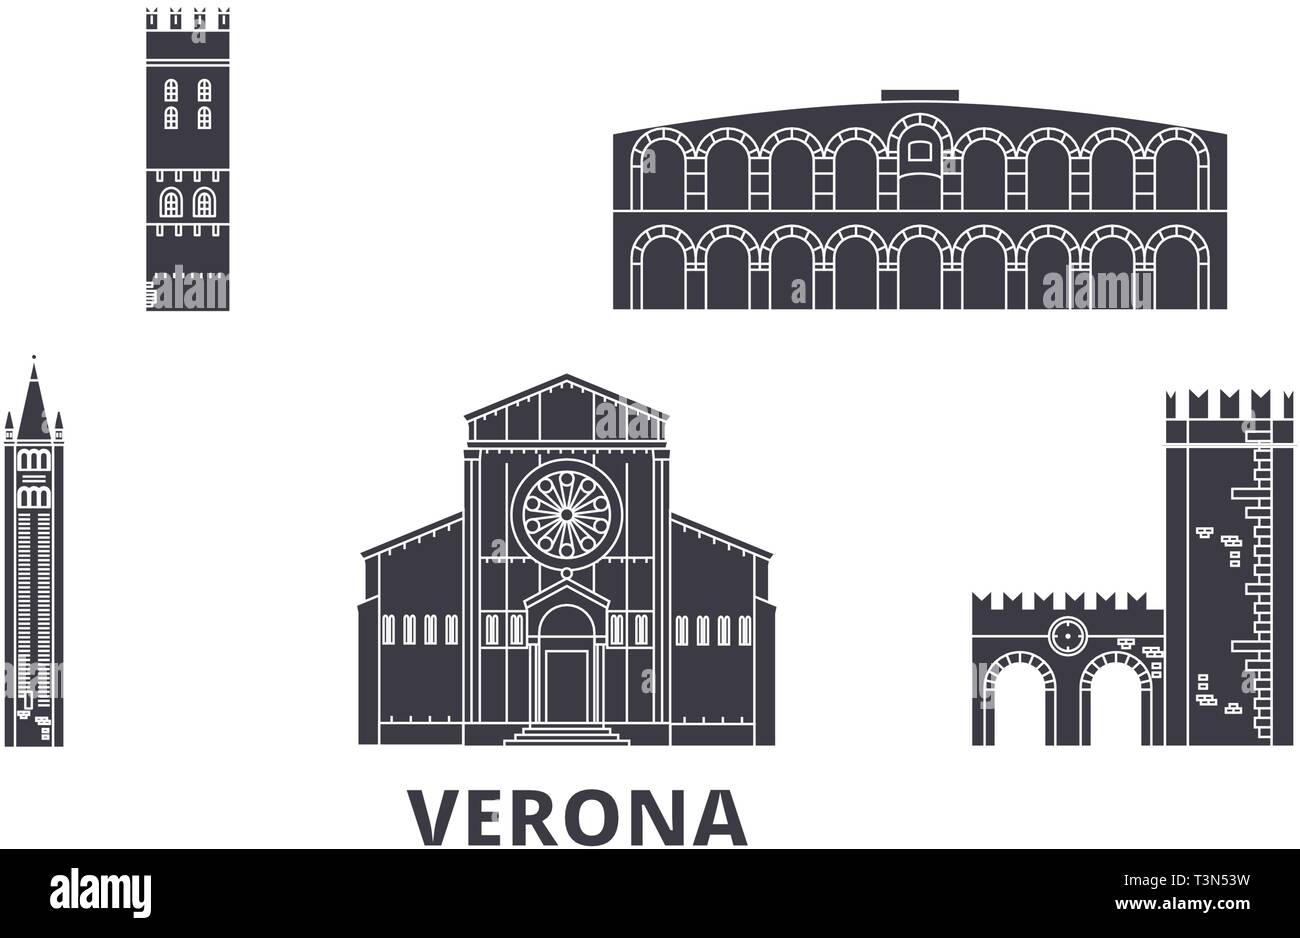 Italien, Verona Flachbild reisen Skyline. Italien, Verona schwarz Stadt Vektor-illustration, Symbol, Reisen, Sehenswürdigkeiten, Wahrzeichen. Stock Vektor